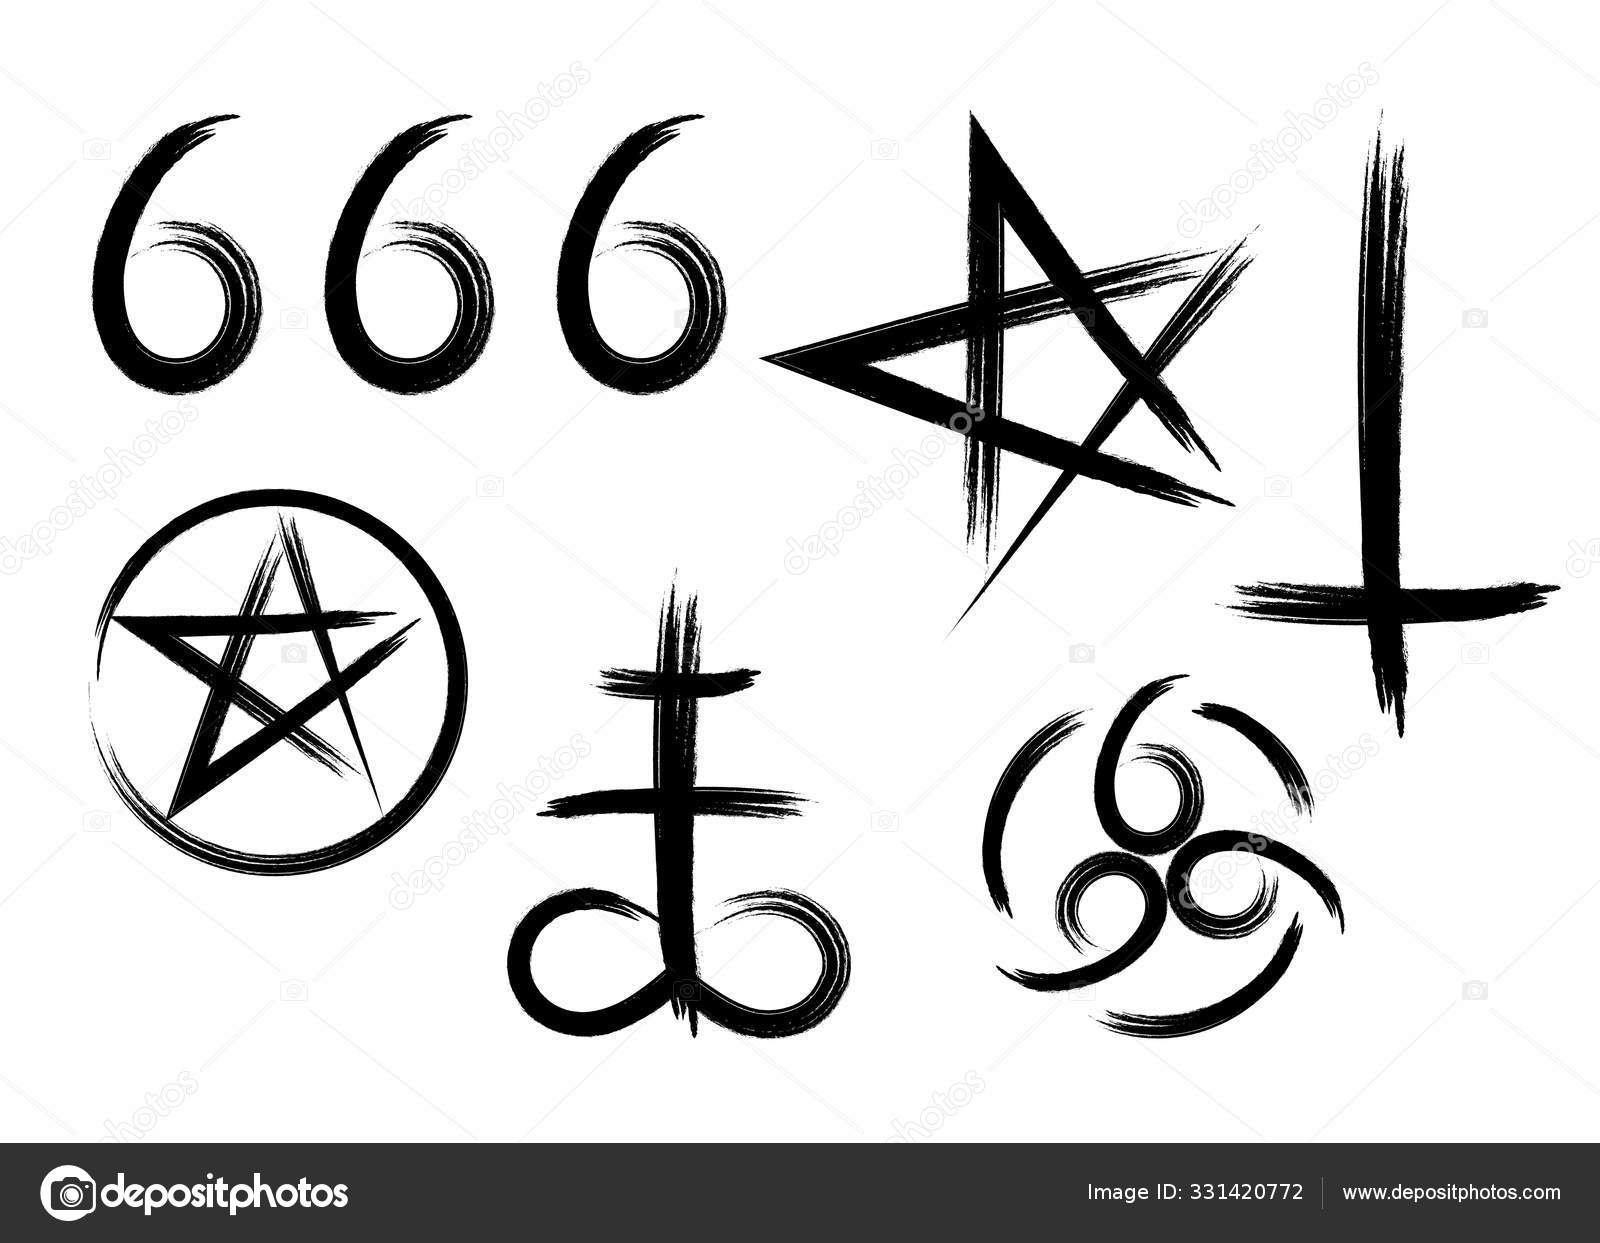 666 Tattoo - Etsy